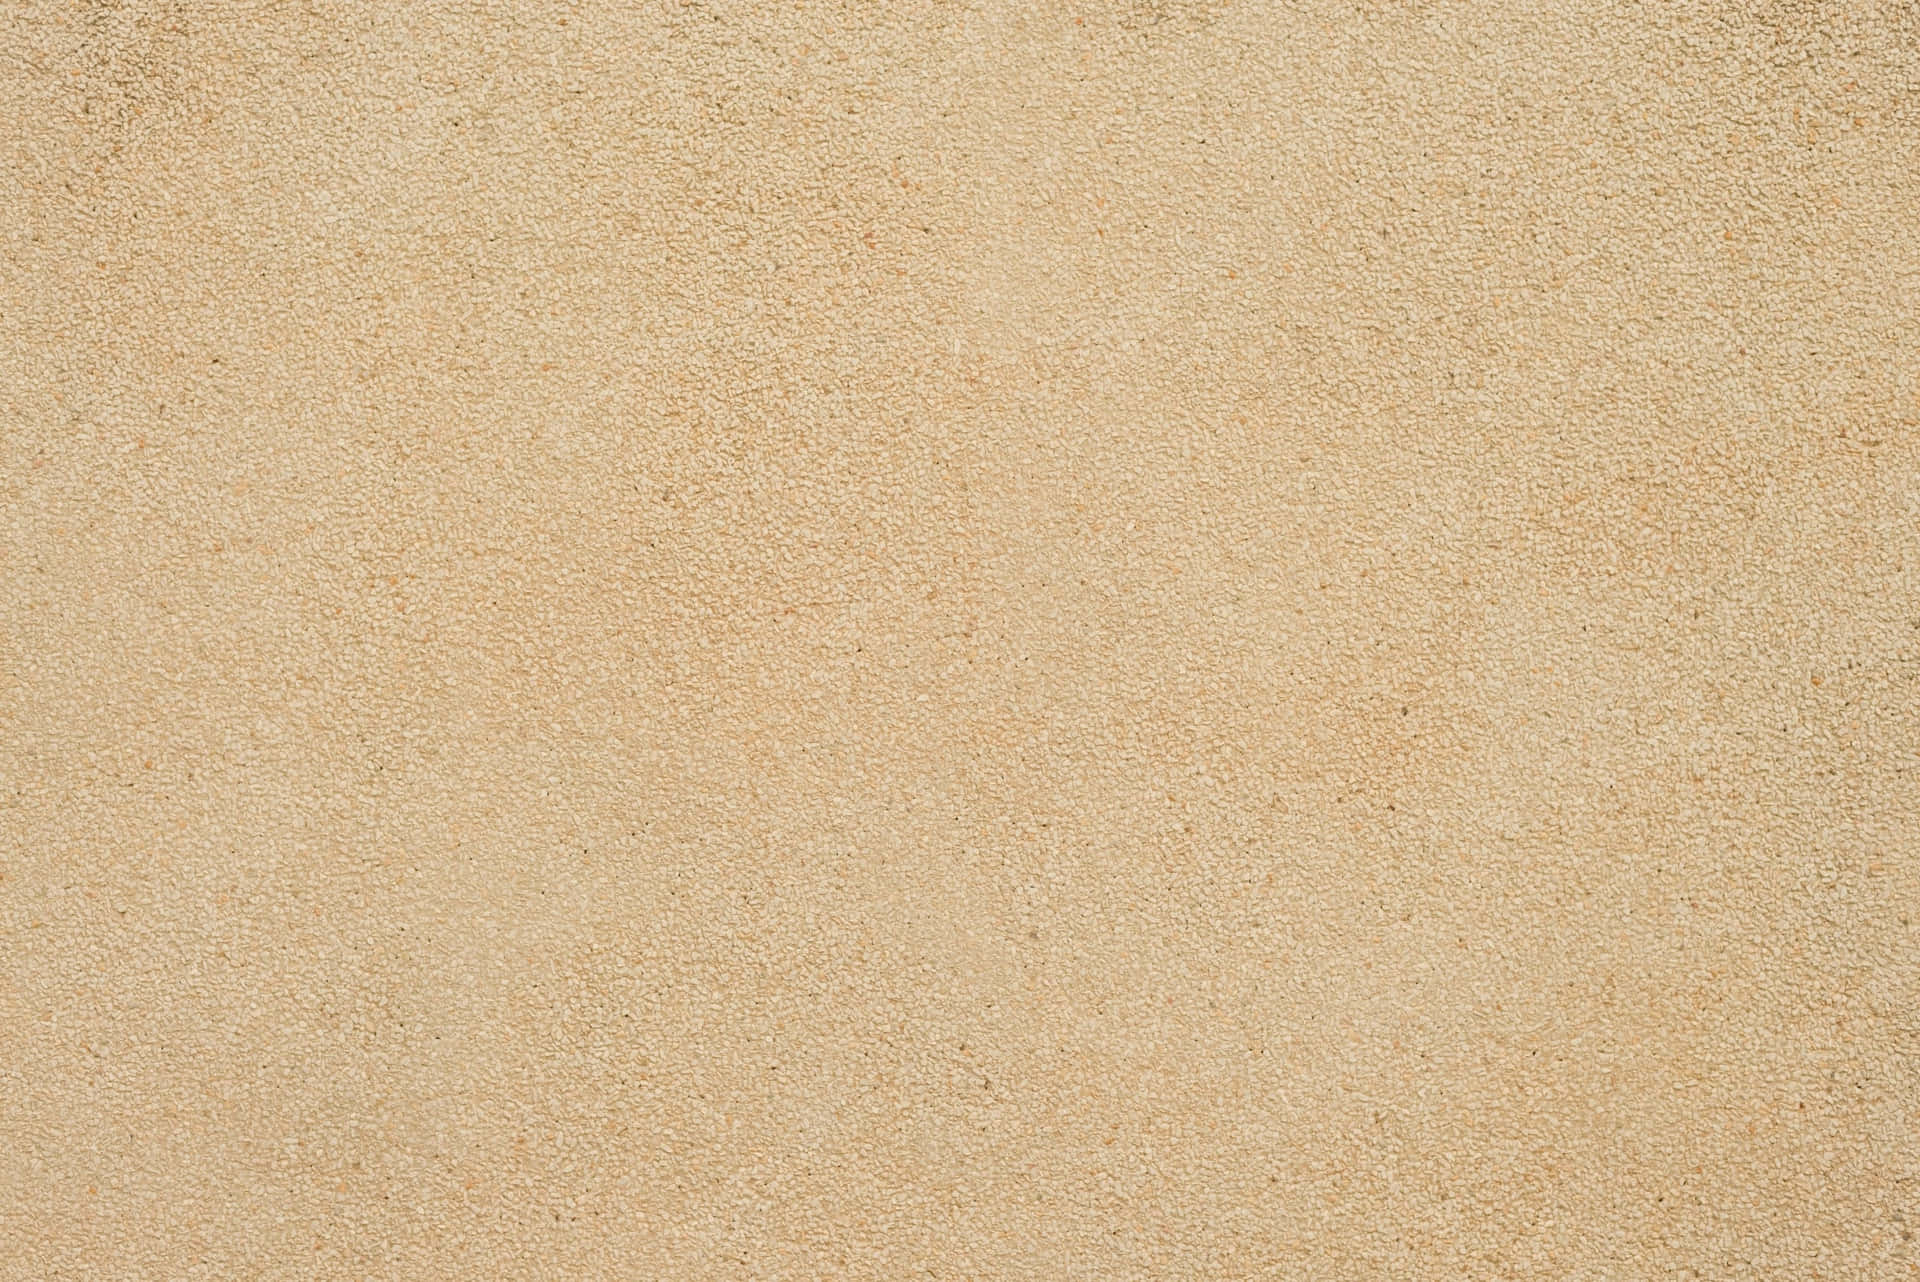 Sandpappertextur. Wallpaper